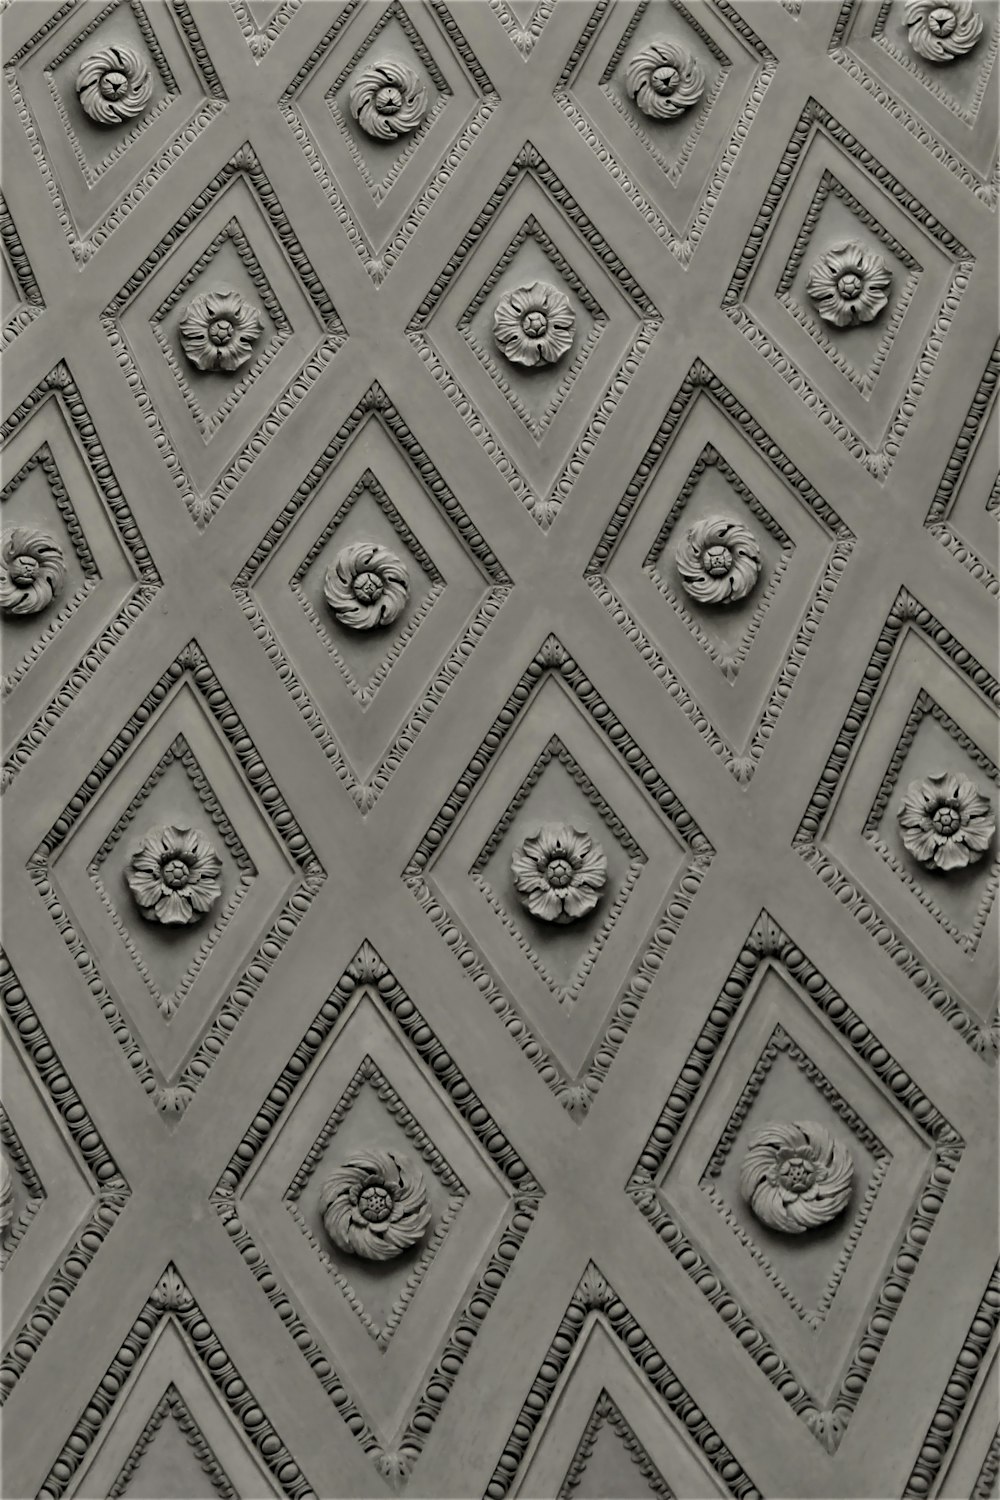 Una foto en blanco y negro de un techo